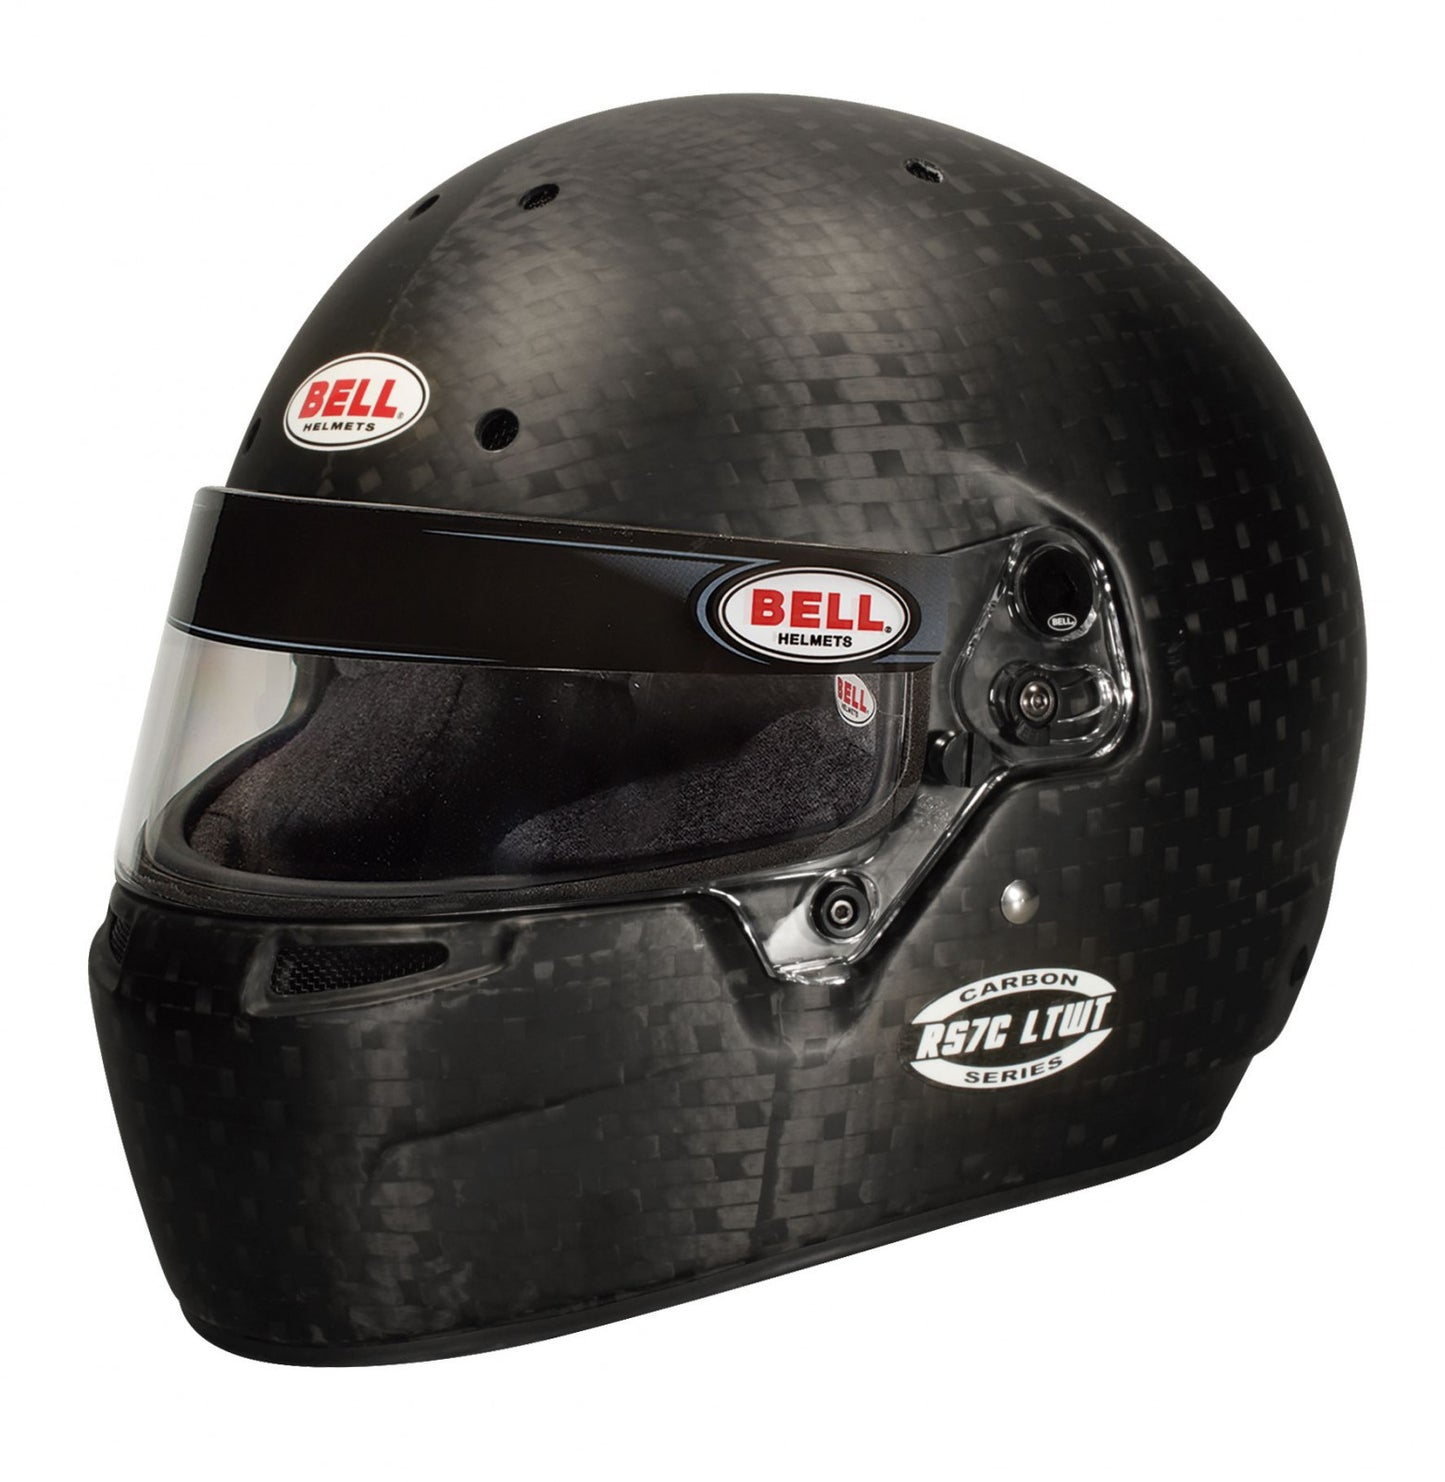 Bell Racing RS7C LTWT Helmet 6 3/4 (54 cm)